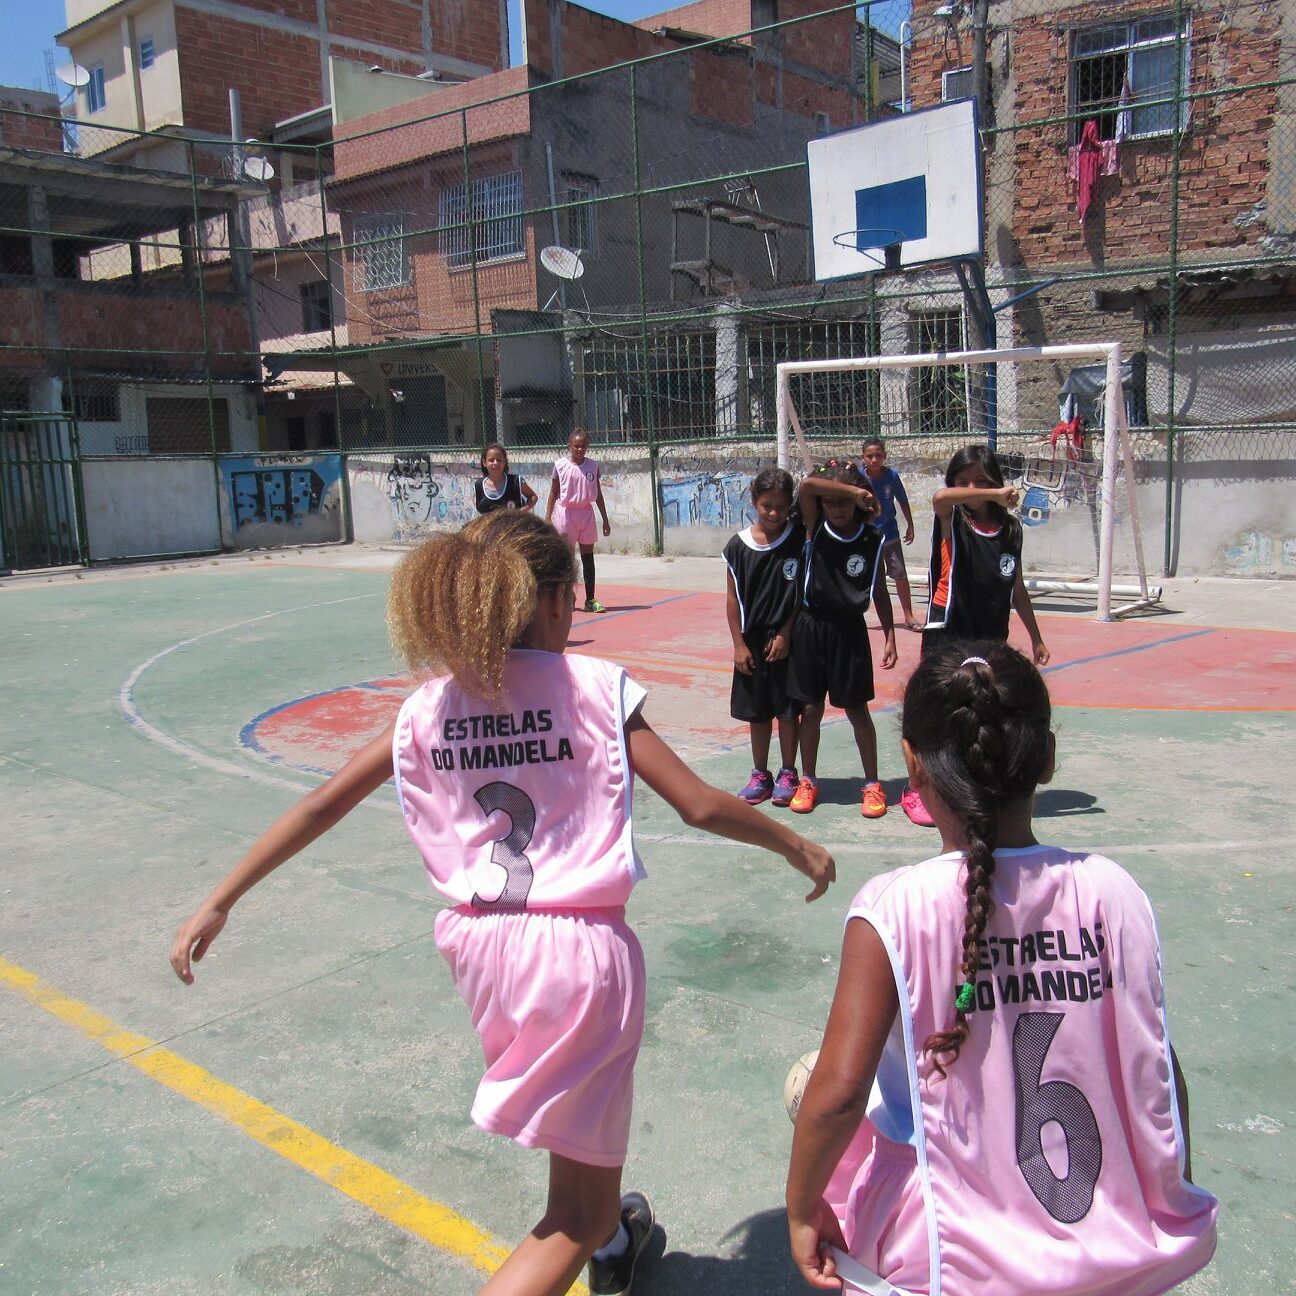 Imagem mostra meninas com uniforme rosa claro jogando futebol em uma quadra da comunidade